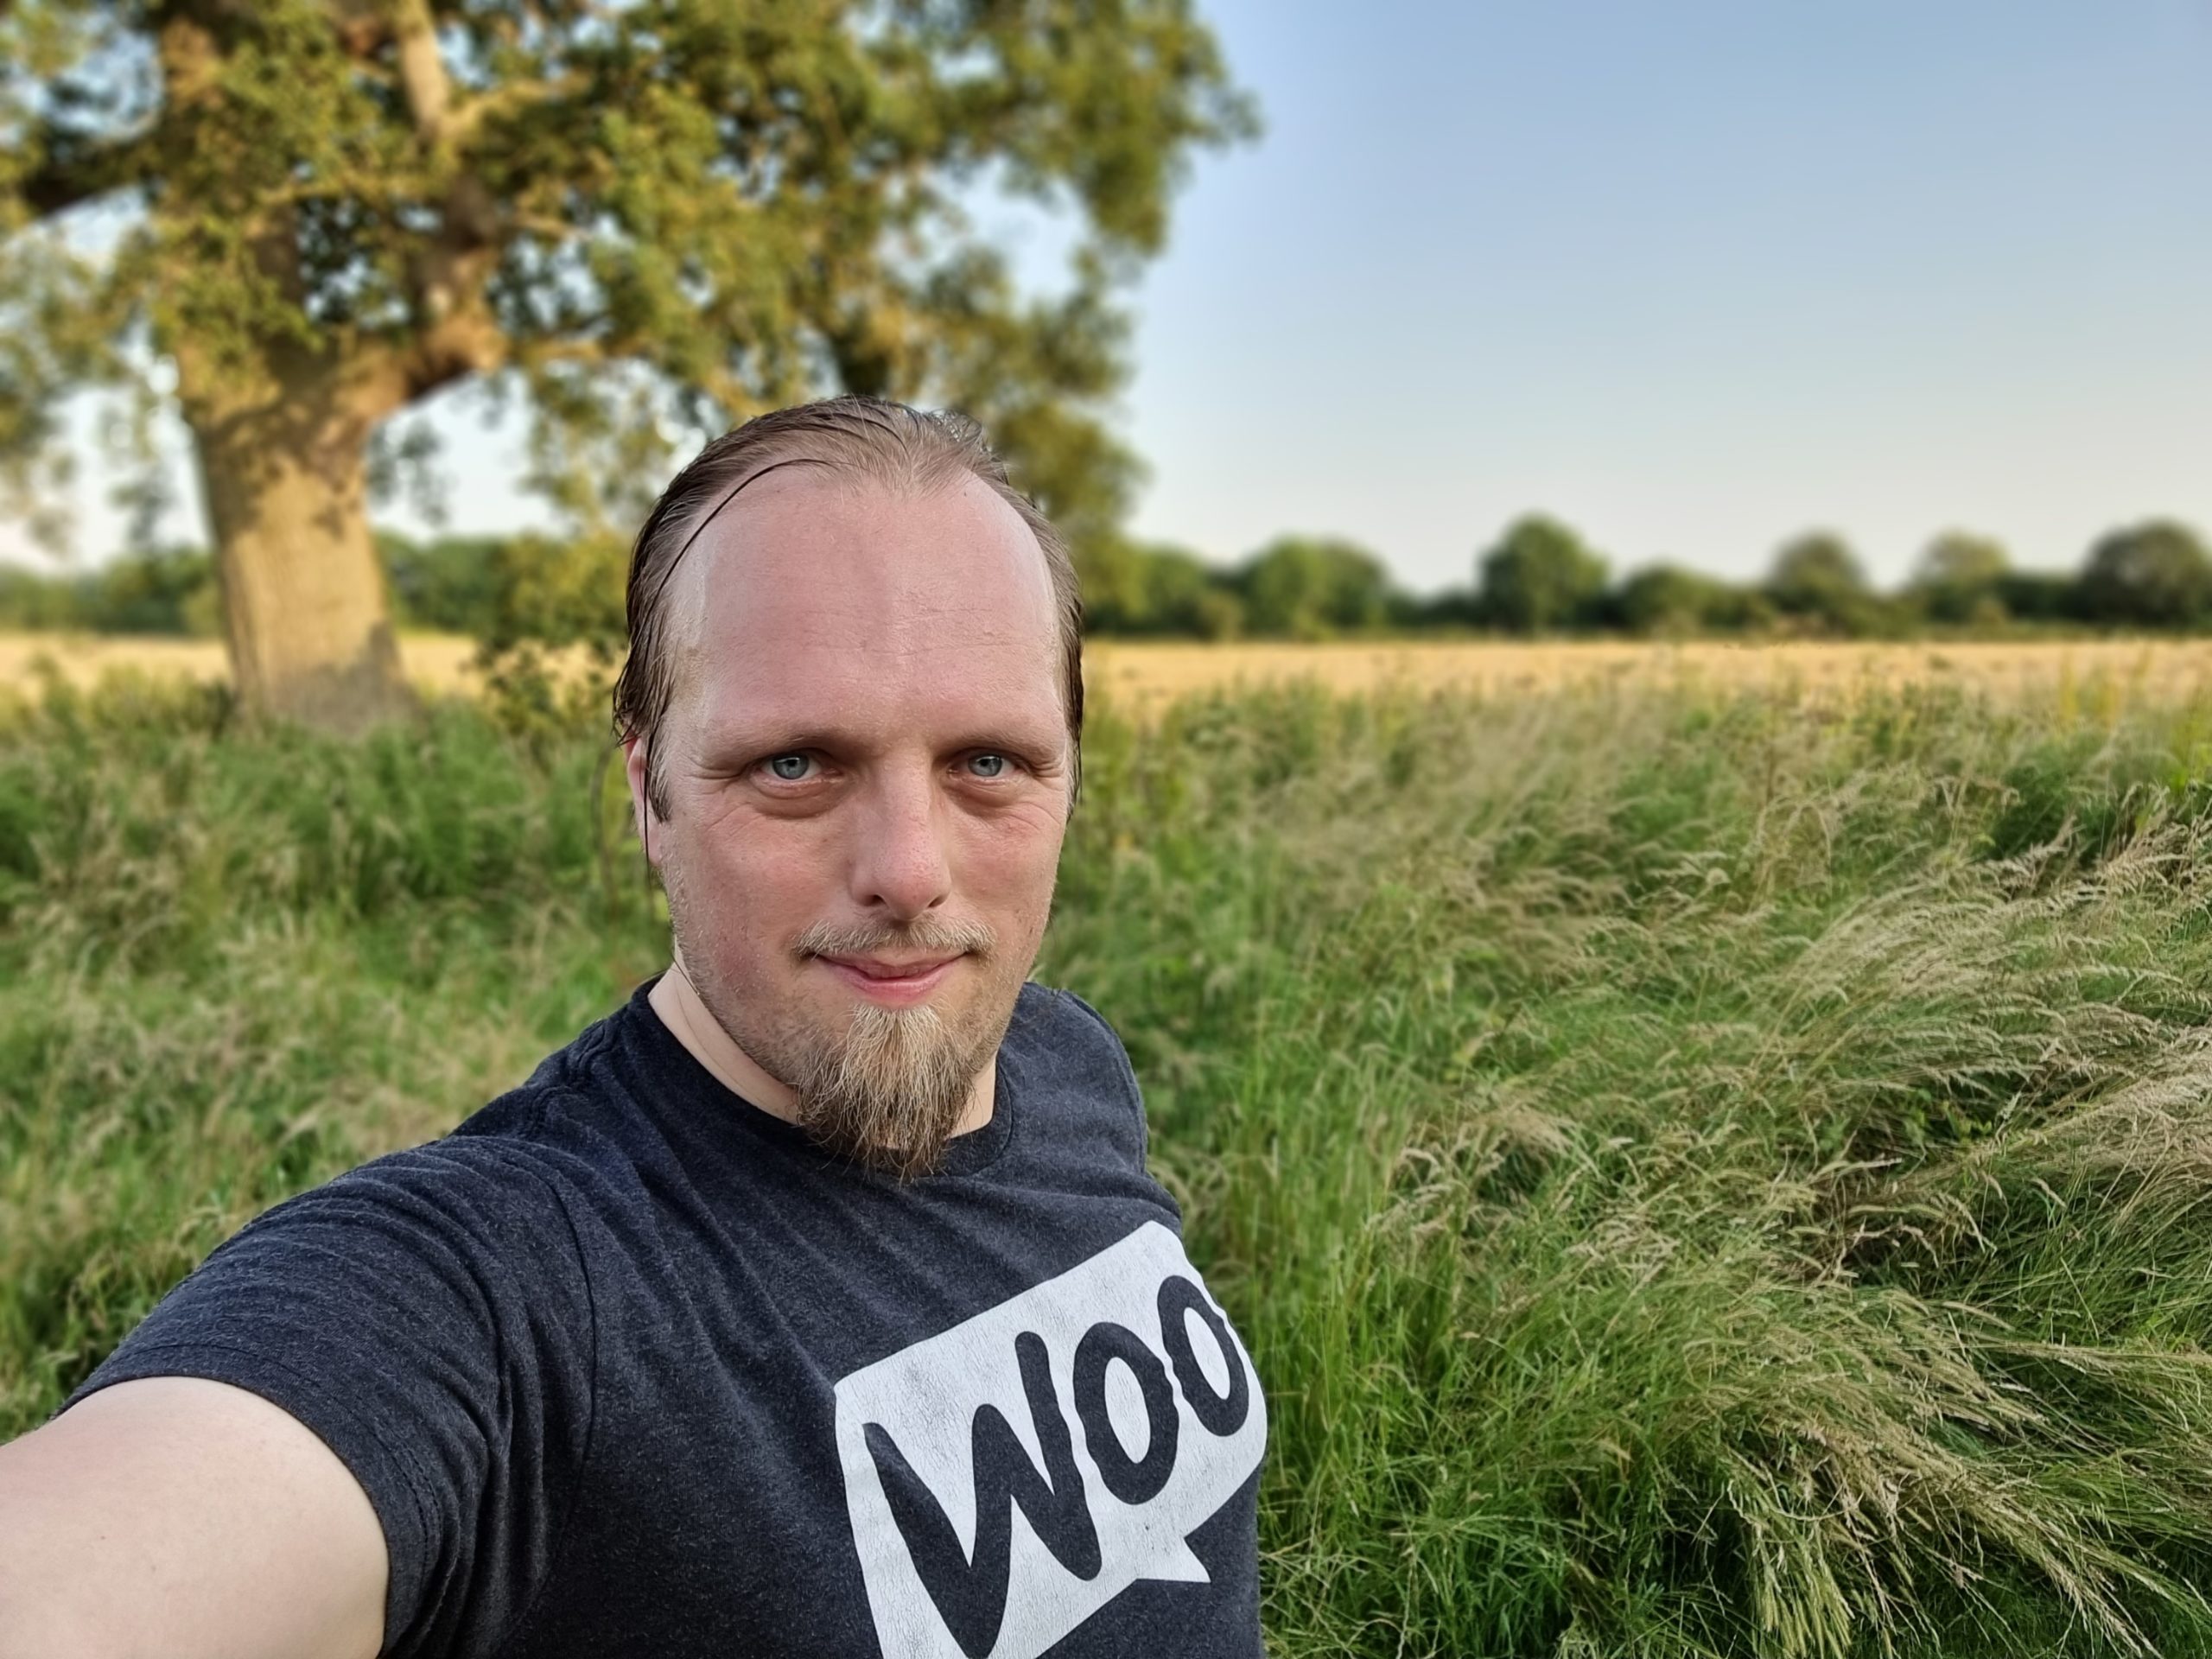 Selfie of Dan standing by a tree in a freshly-mowed cornfield.